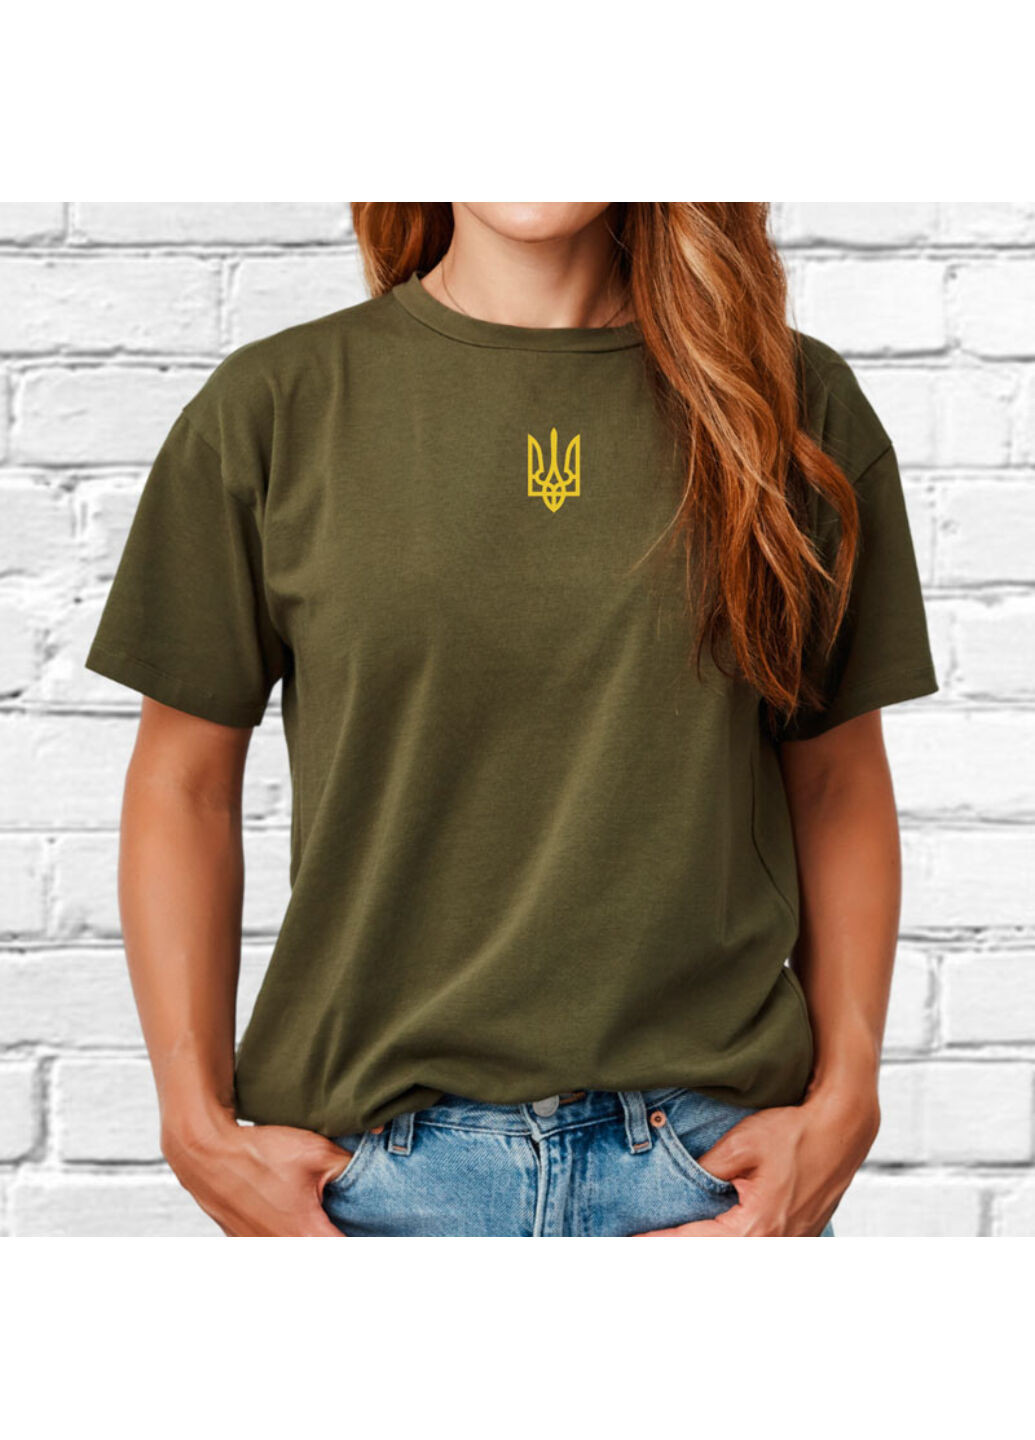 Хакі (оливкова) футболка з вишивкою золотого тризуба жіноча millytary green m No Brand